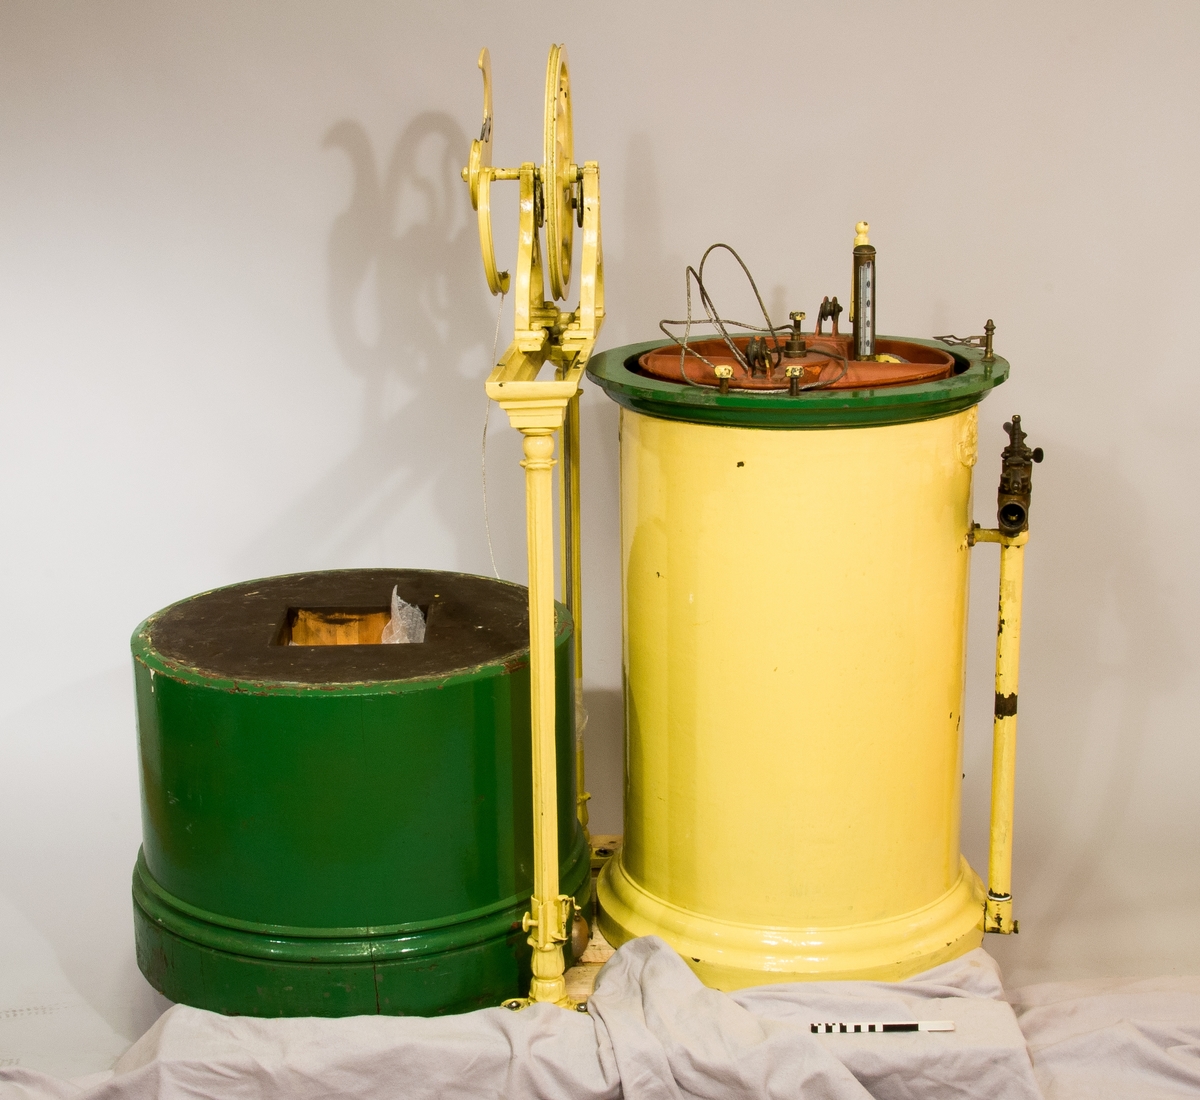 Gasklocka målad i gul och grön färg. Har texten "The gas meter Co, limited makers Oldhall works" på sig.